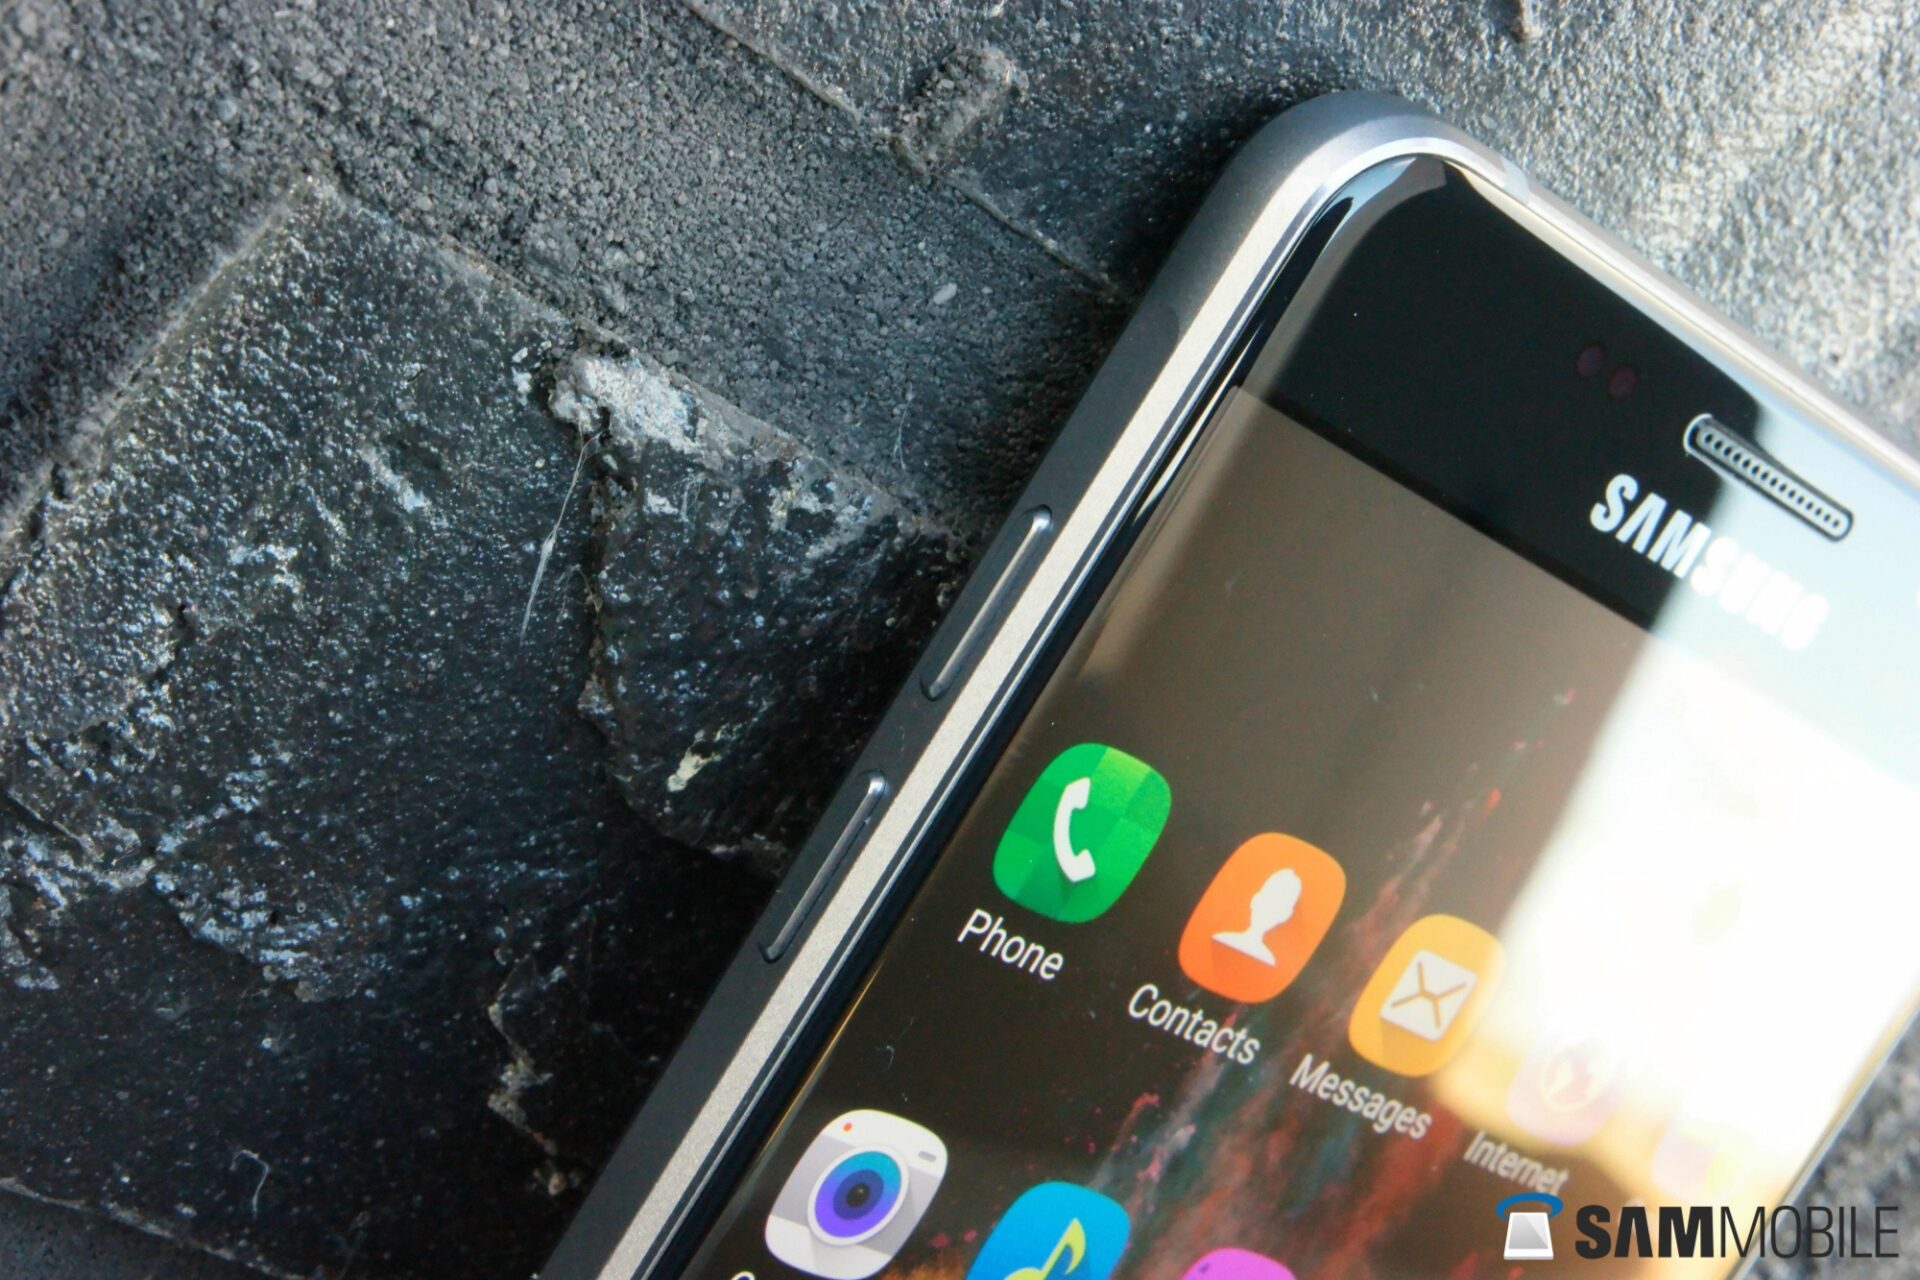 Samsung Galaxy A5 sẽ được cập nhật Android 7.0 Nougat vào cuối tháng 1